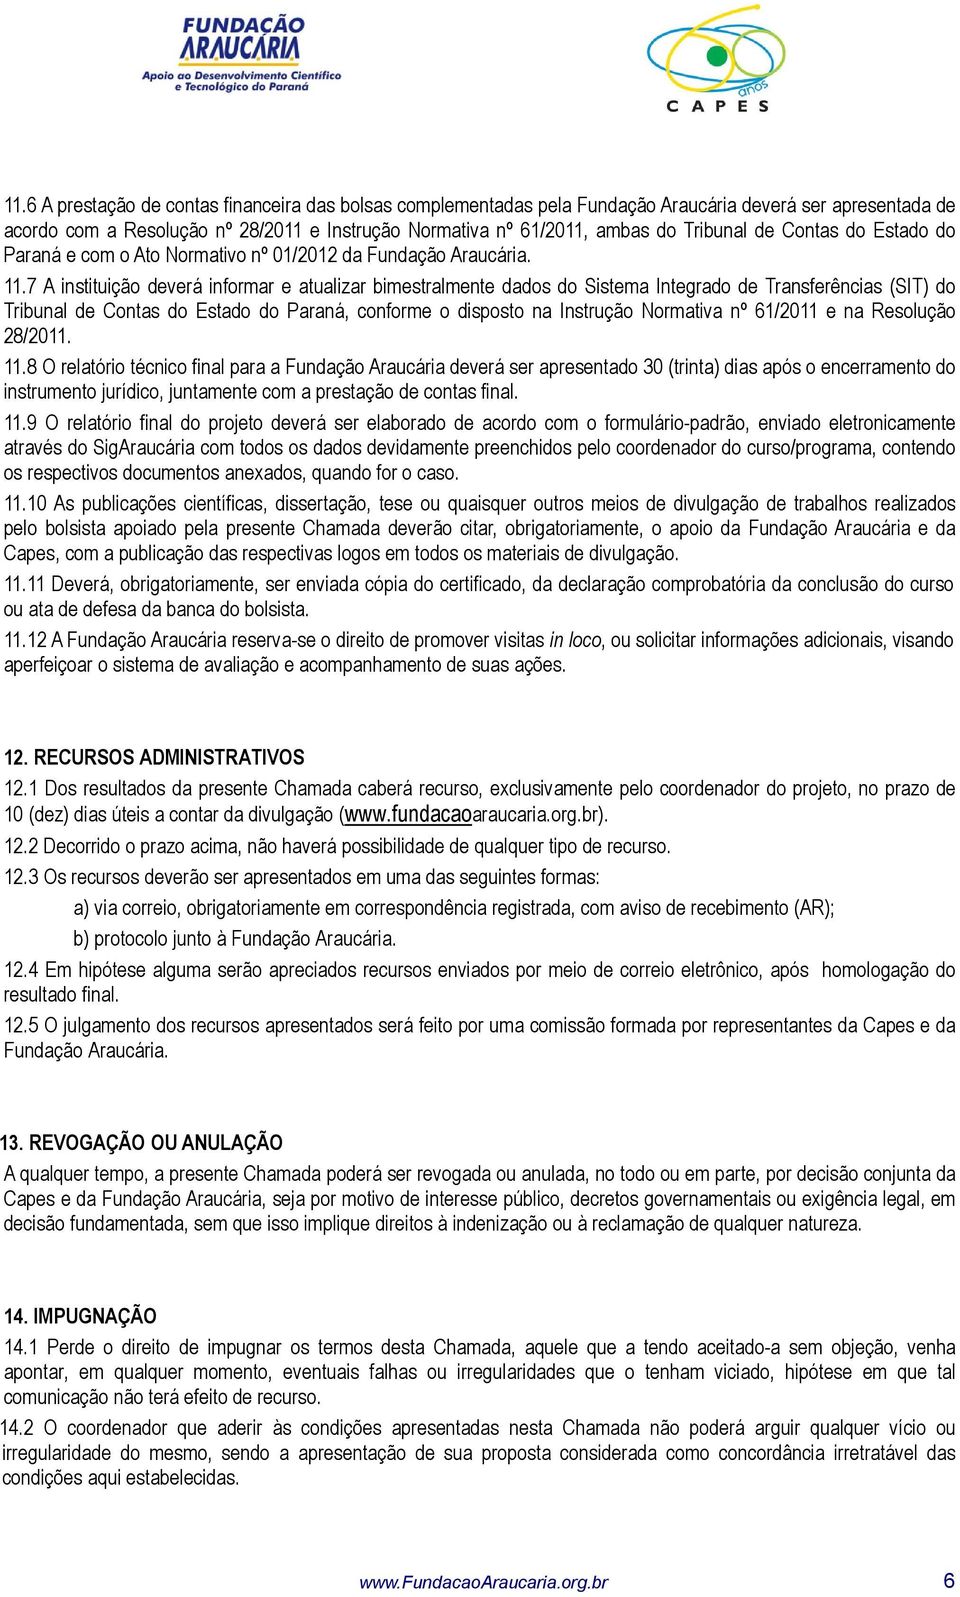 7 A instituição deverá informar e atualizar bimestralmente dados do Sistema Integrado de Transferências (SIT) do Tribunal de Contas do Estado do Paraná, conforme o disposto na Instrução Normativa nº